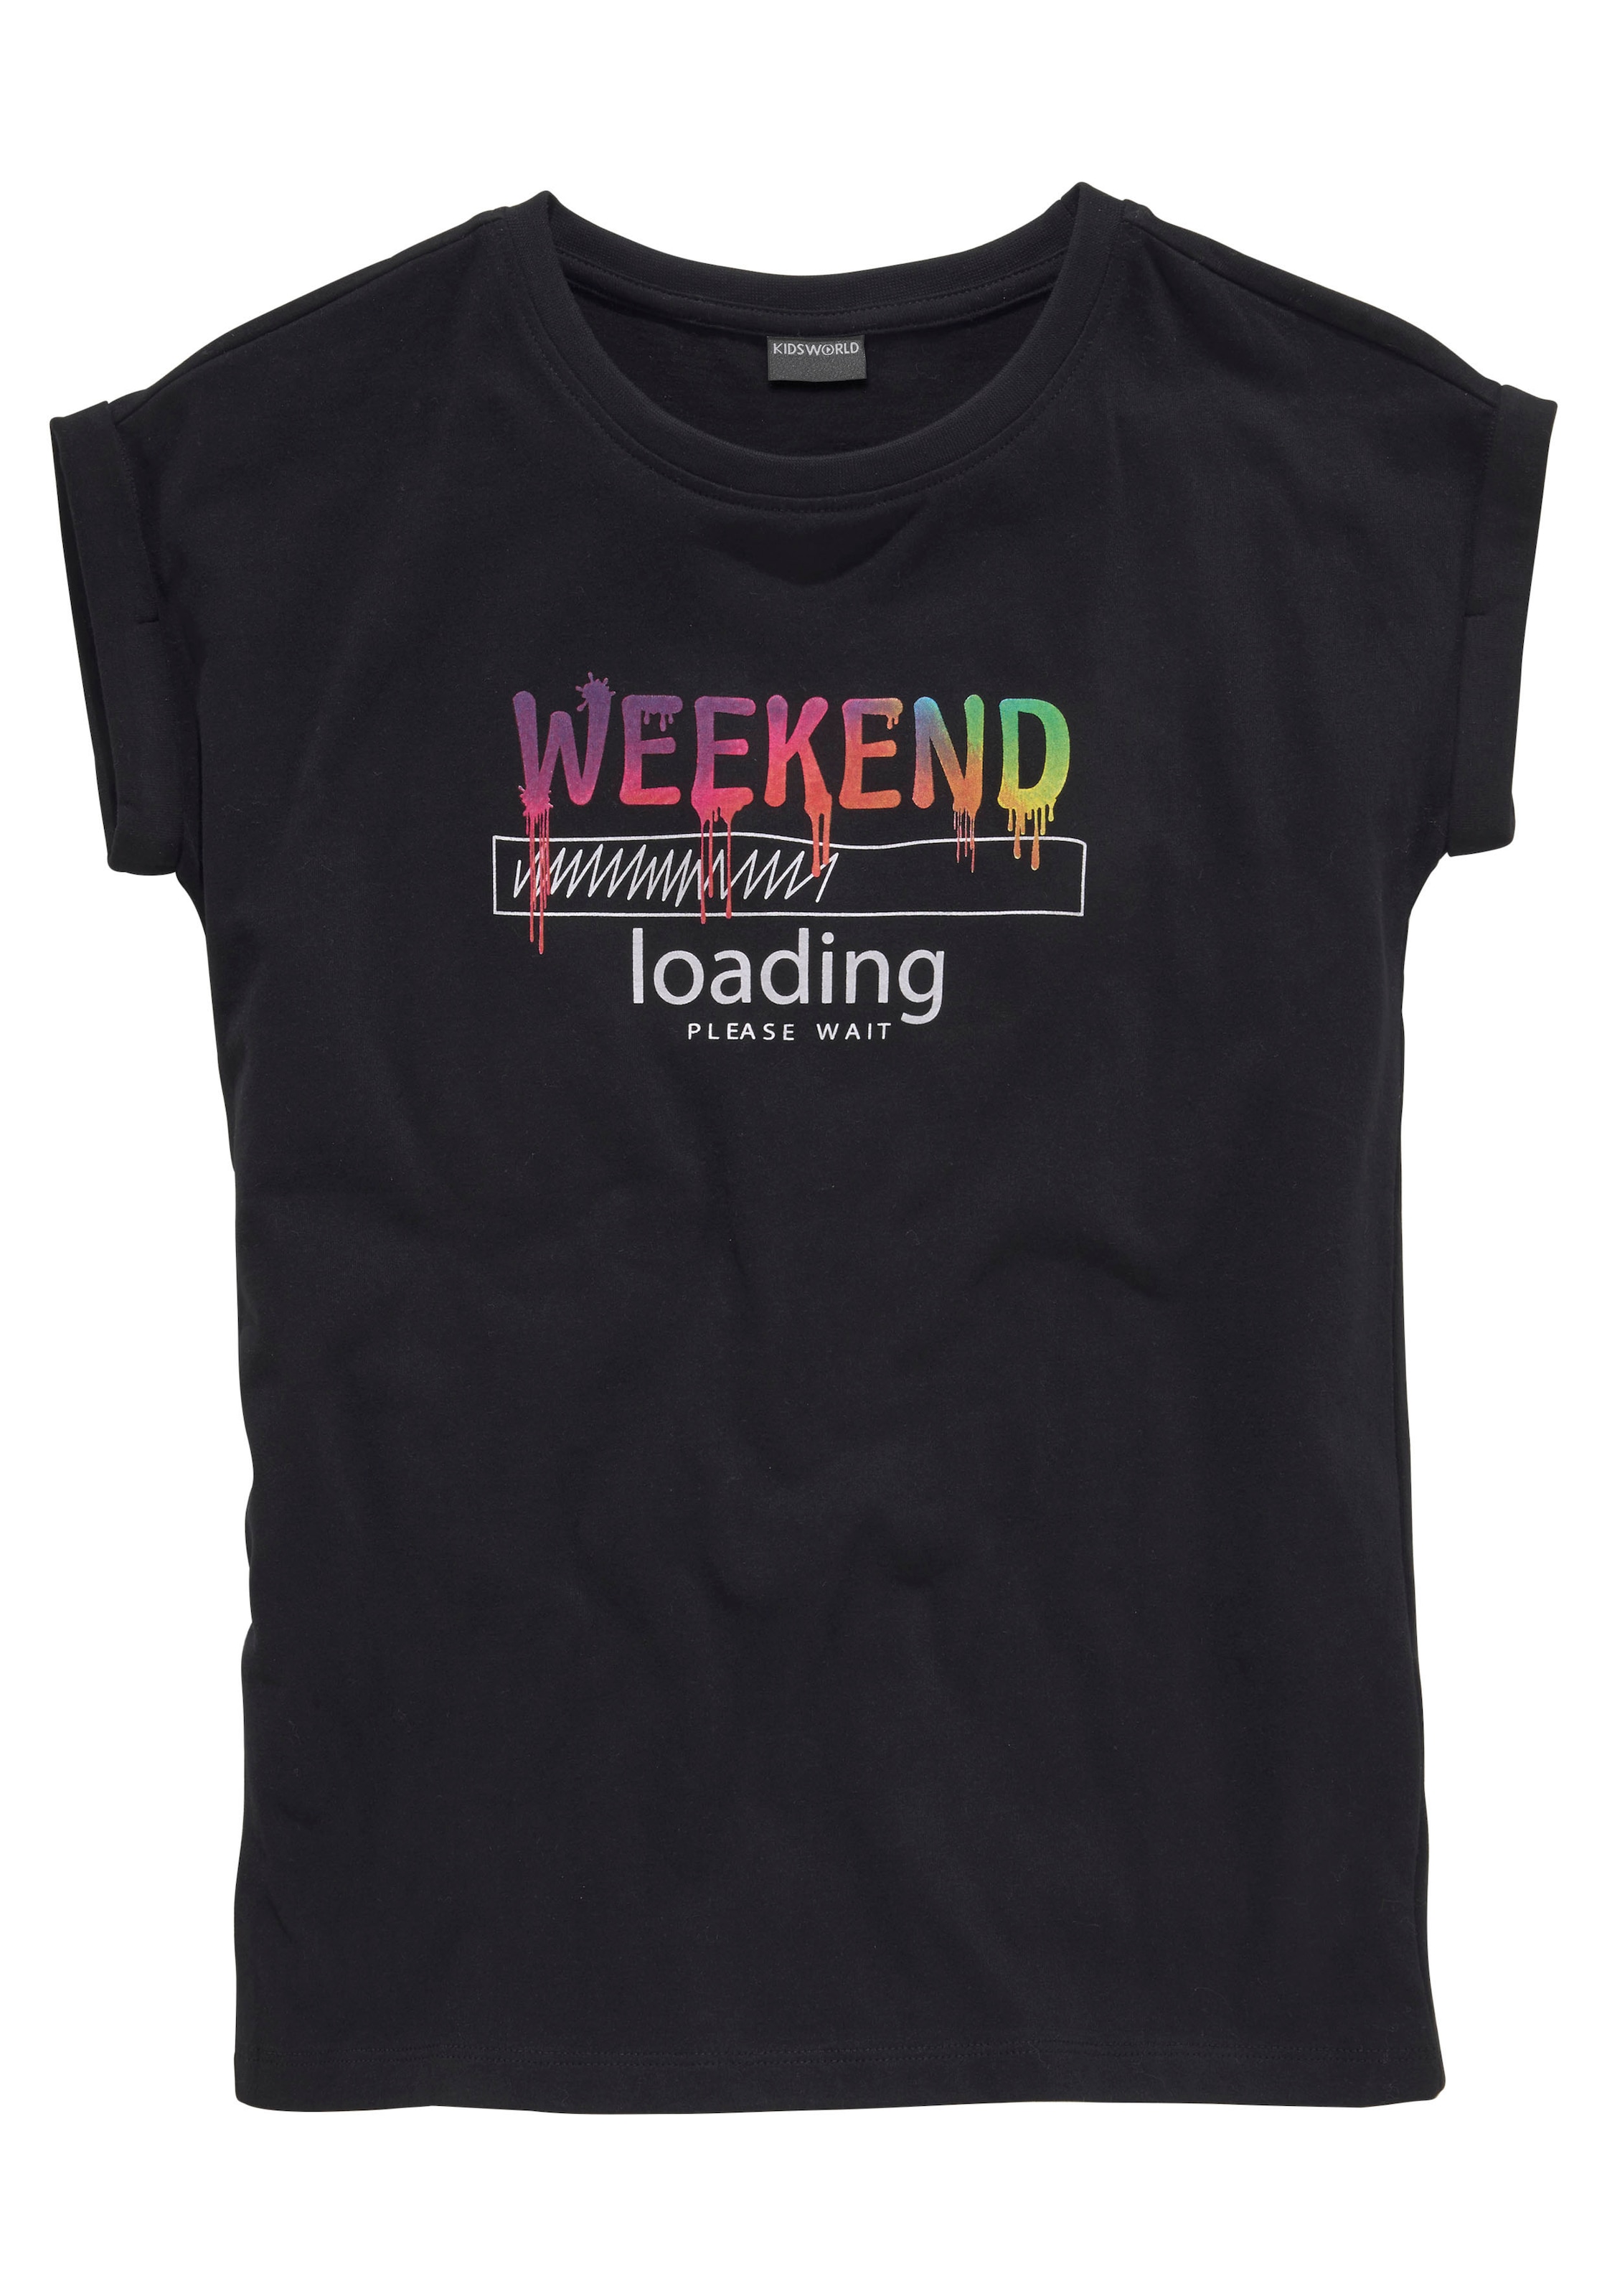 unterschiedlich Form, sind loading...please bei in T-Shirt KIDSWORLD wait«, Regenbogen-Druckfarben legerer weiter »WEEKEND ♕